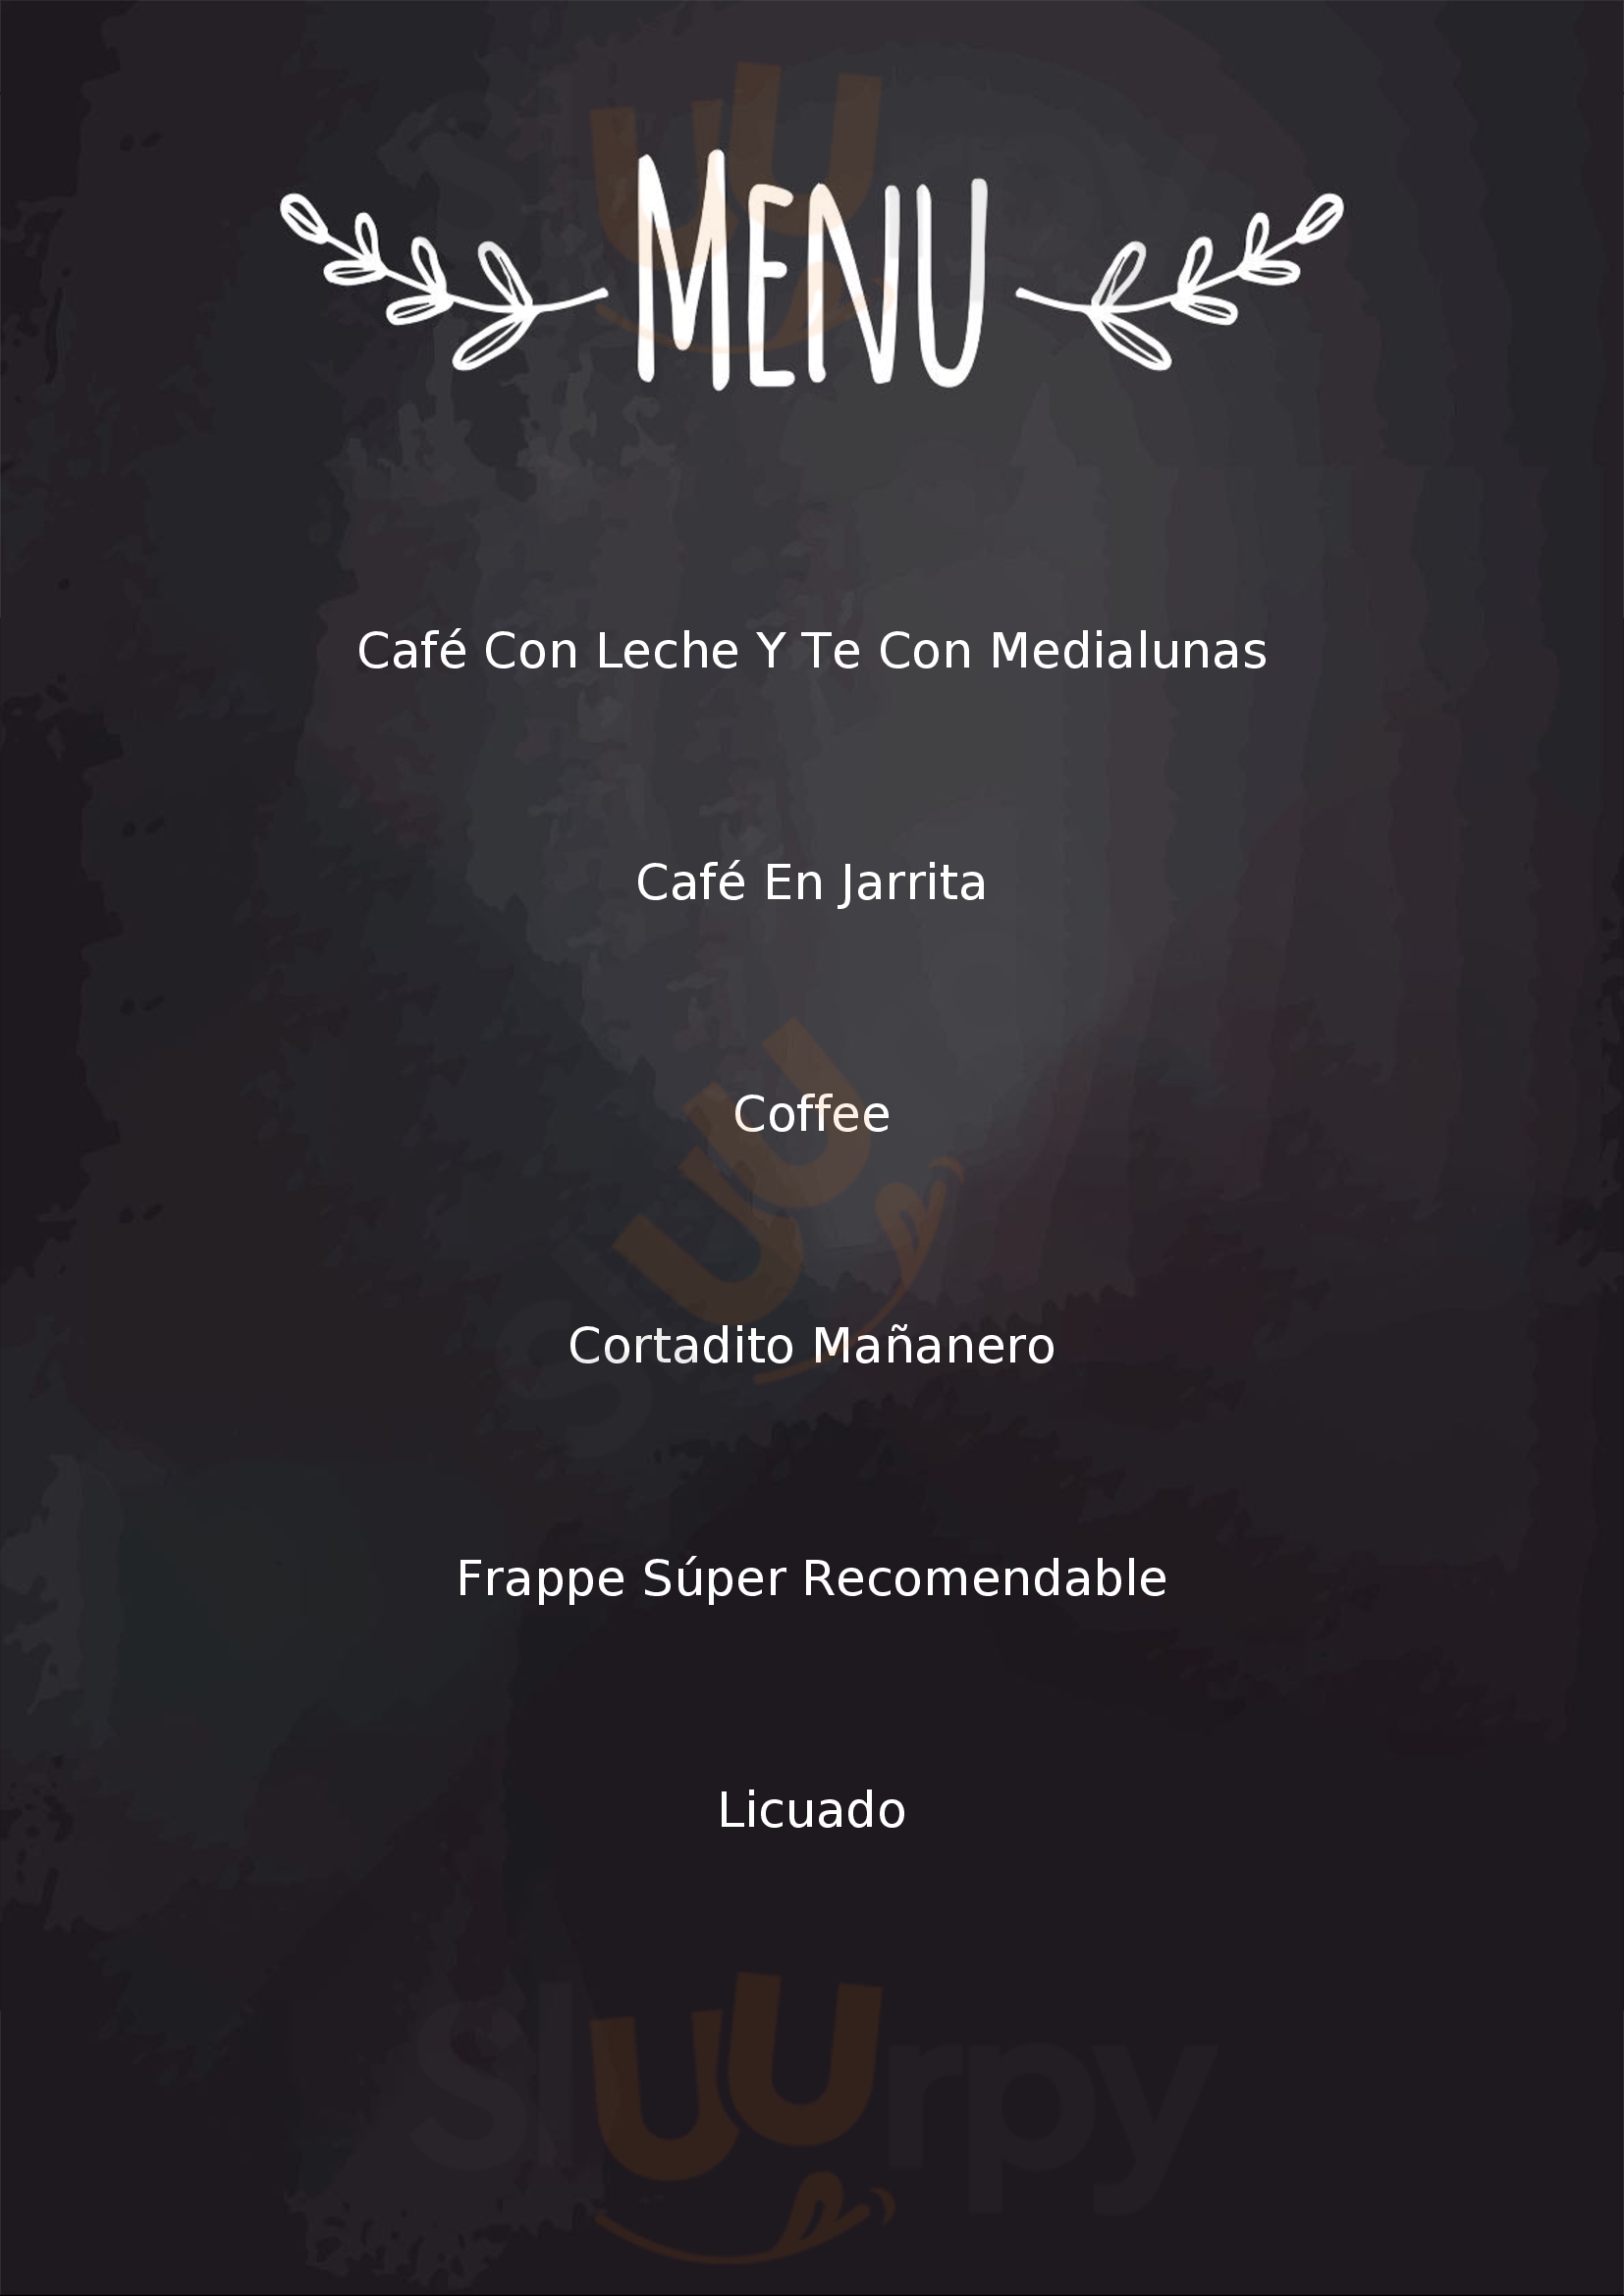 Café Isidro Salta Menu - 1